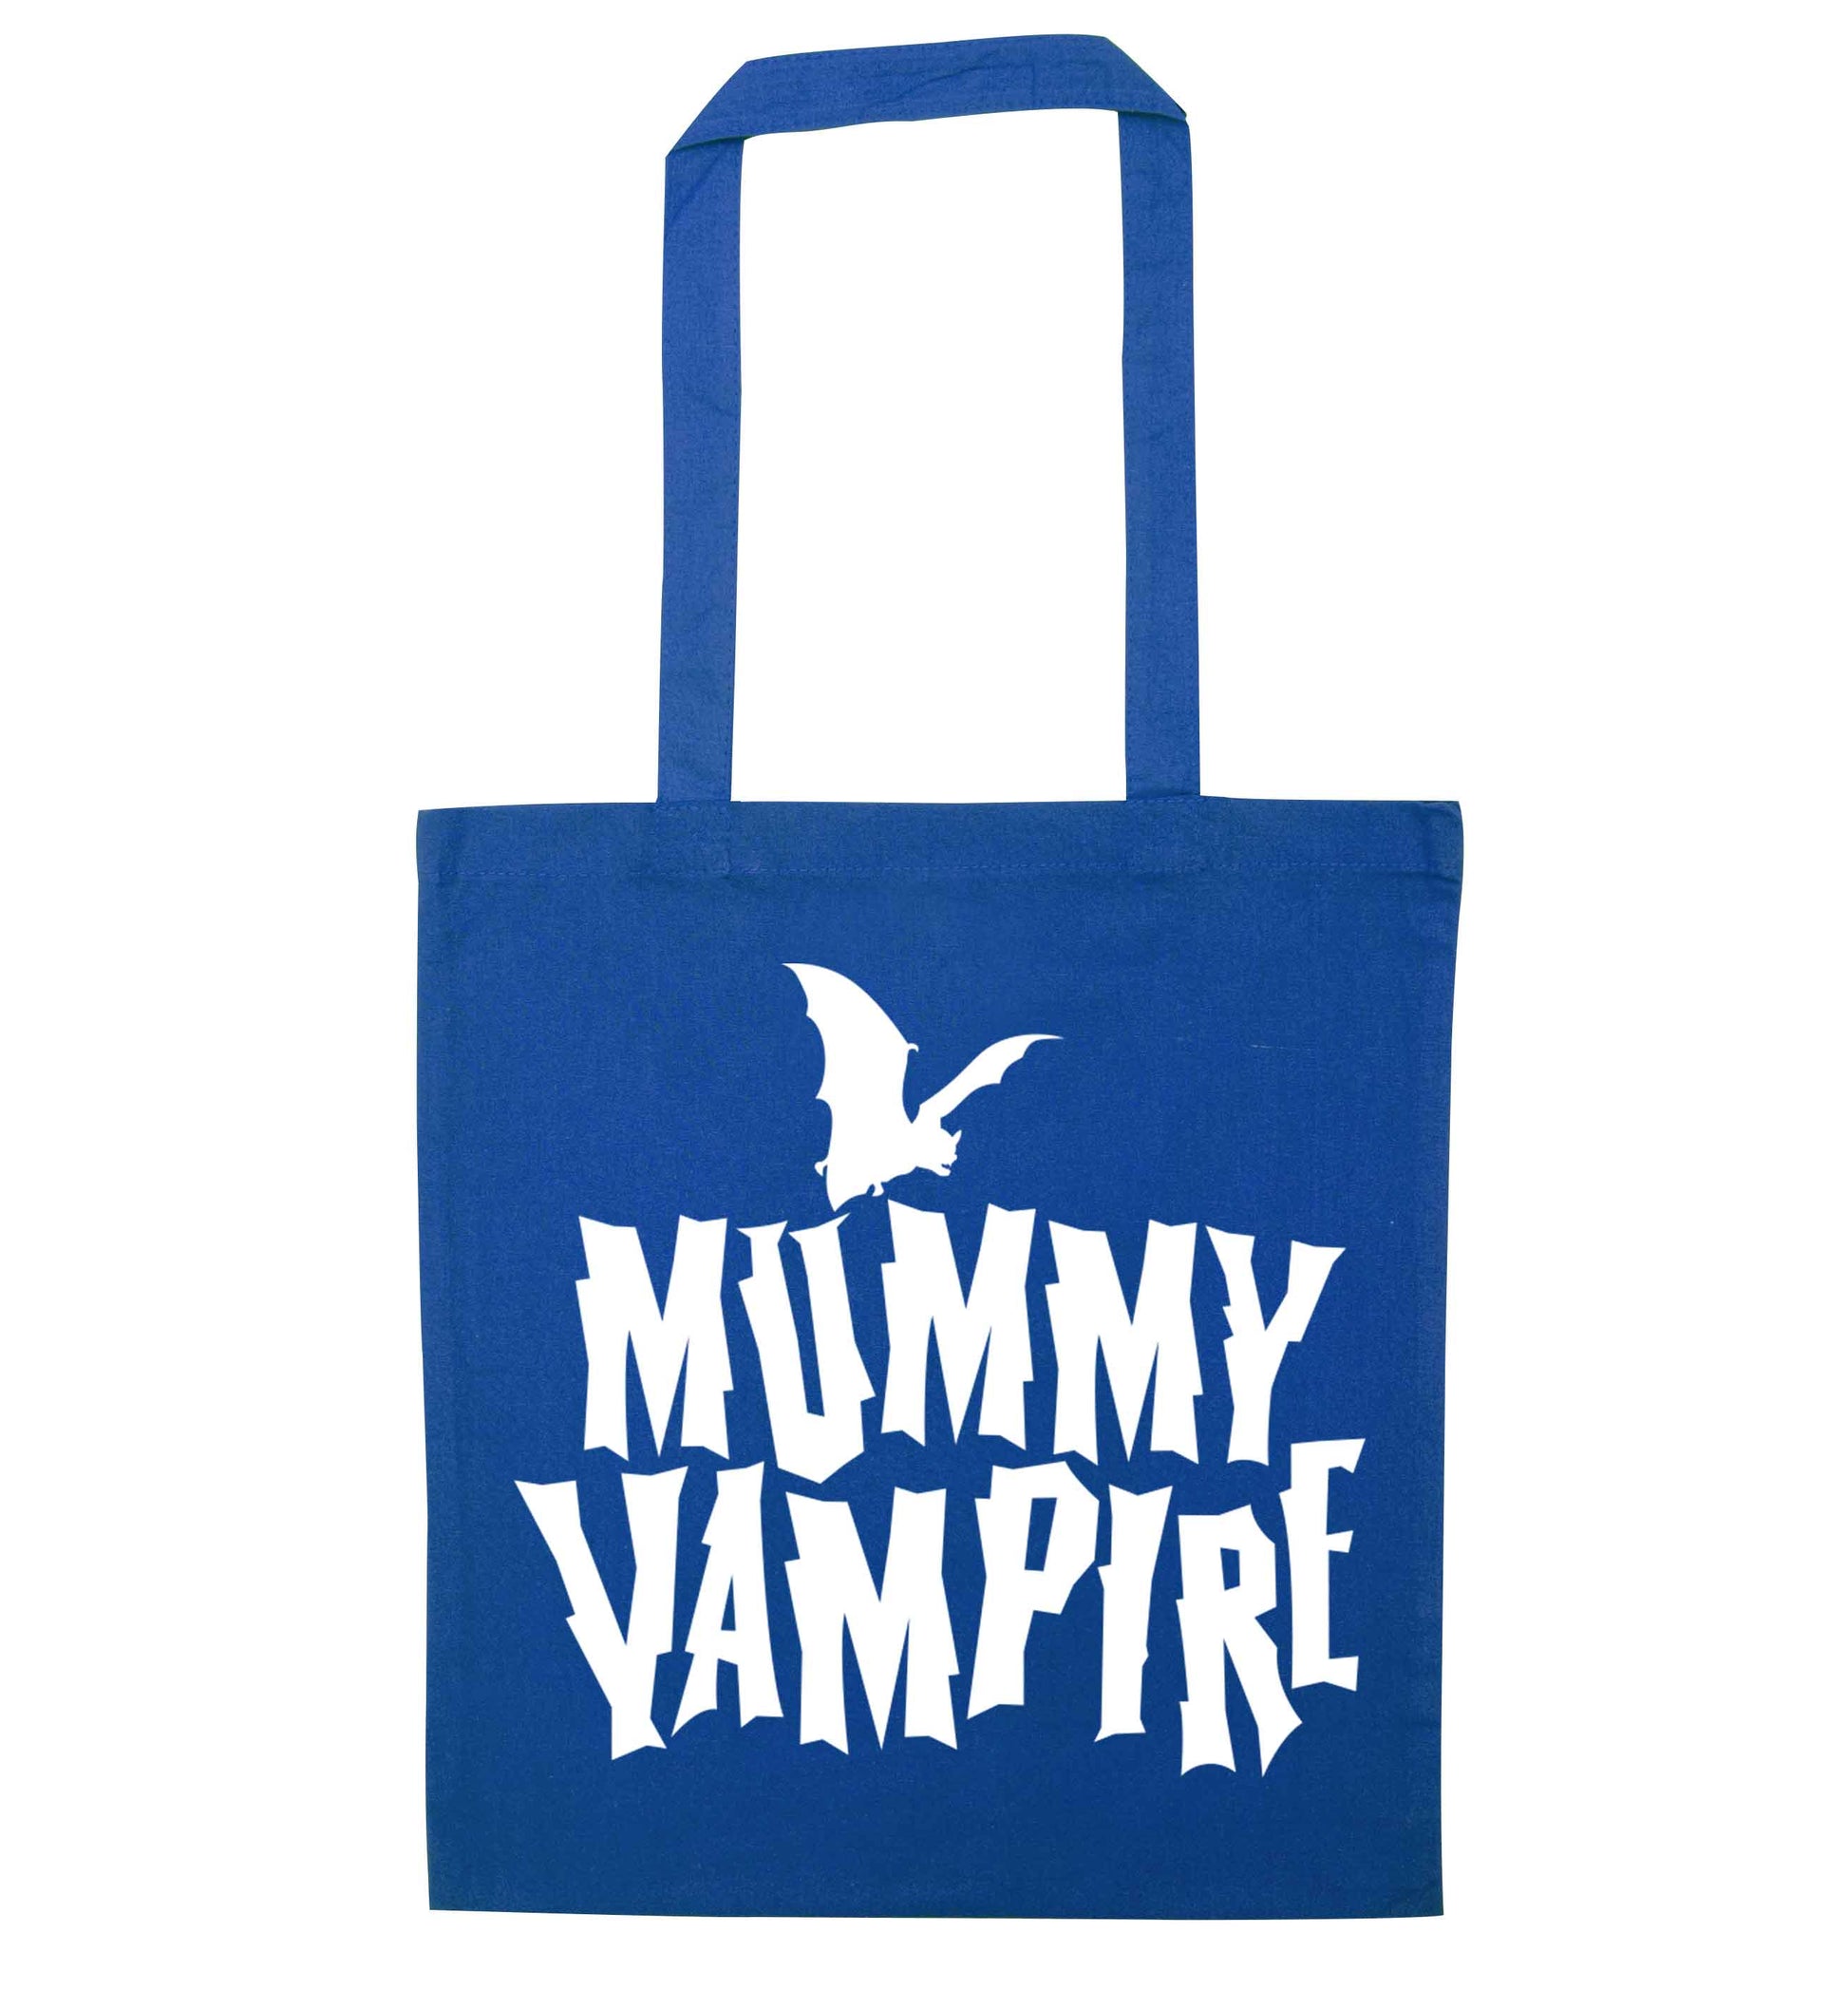 Mummy vampire blue tote bag